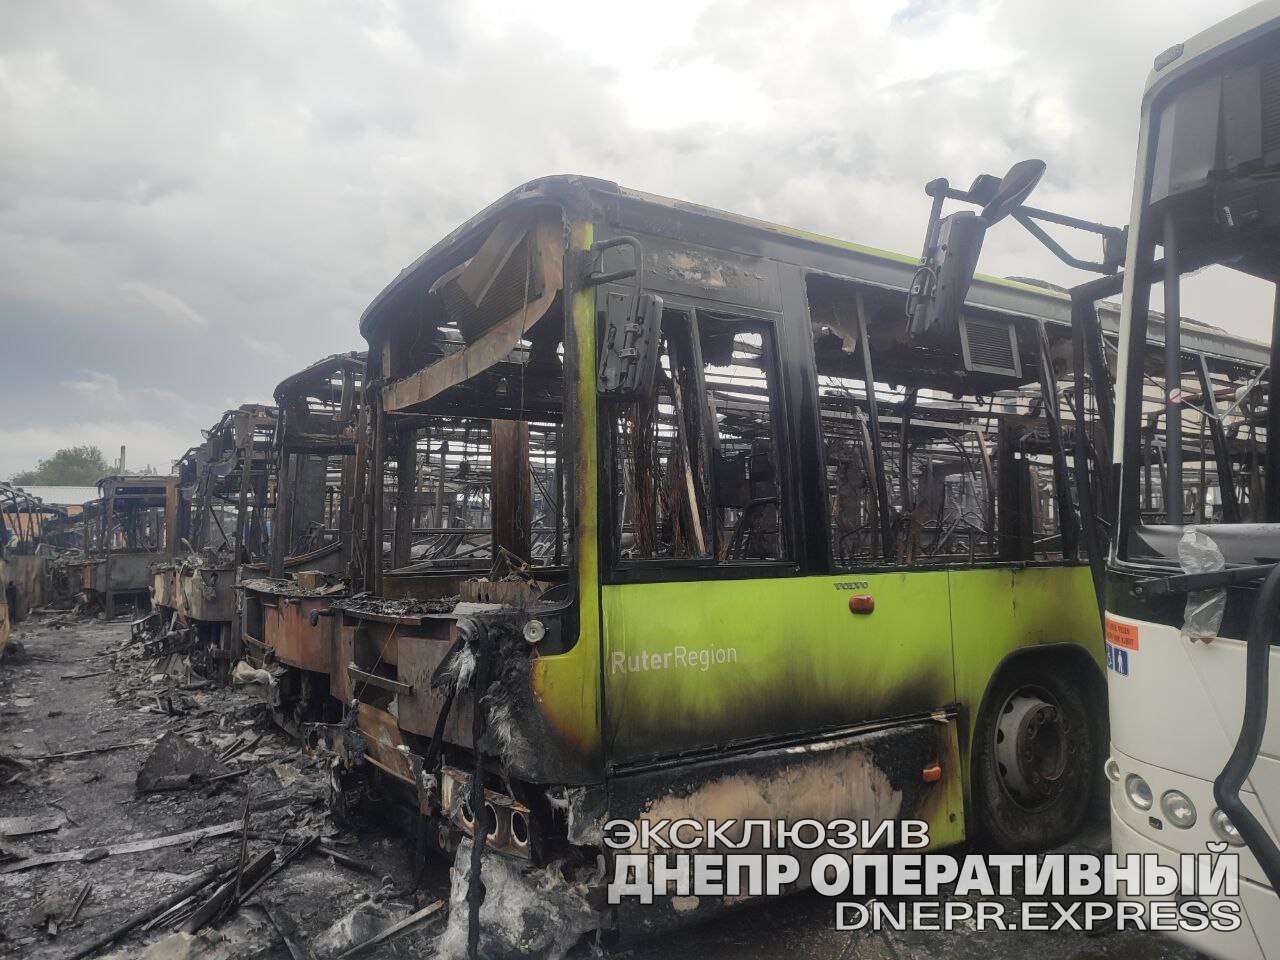 сгоревшие автобусы днепр